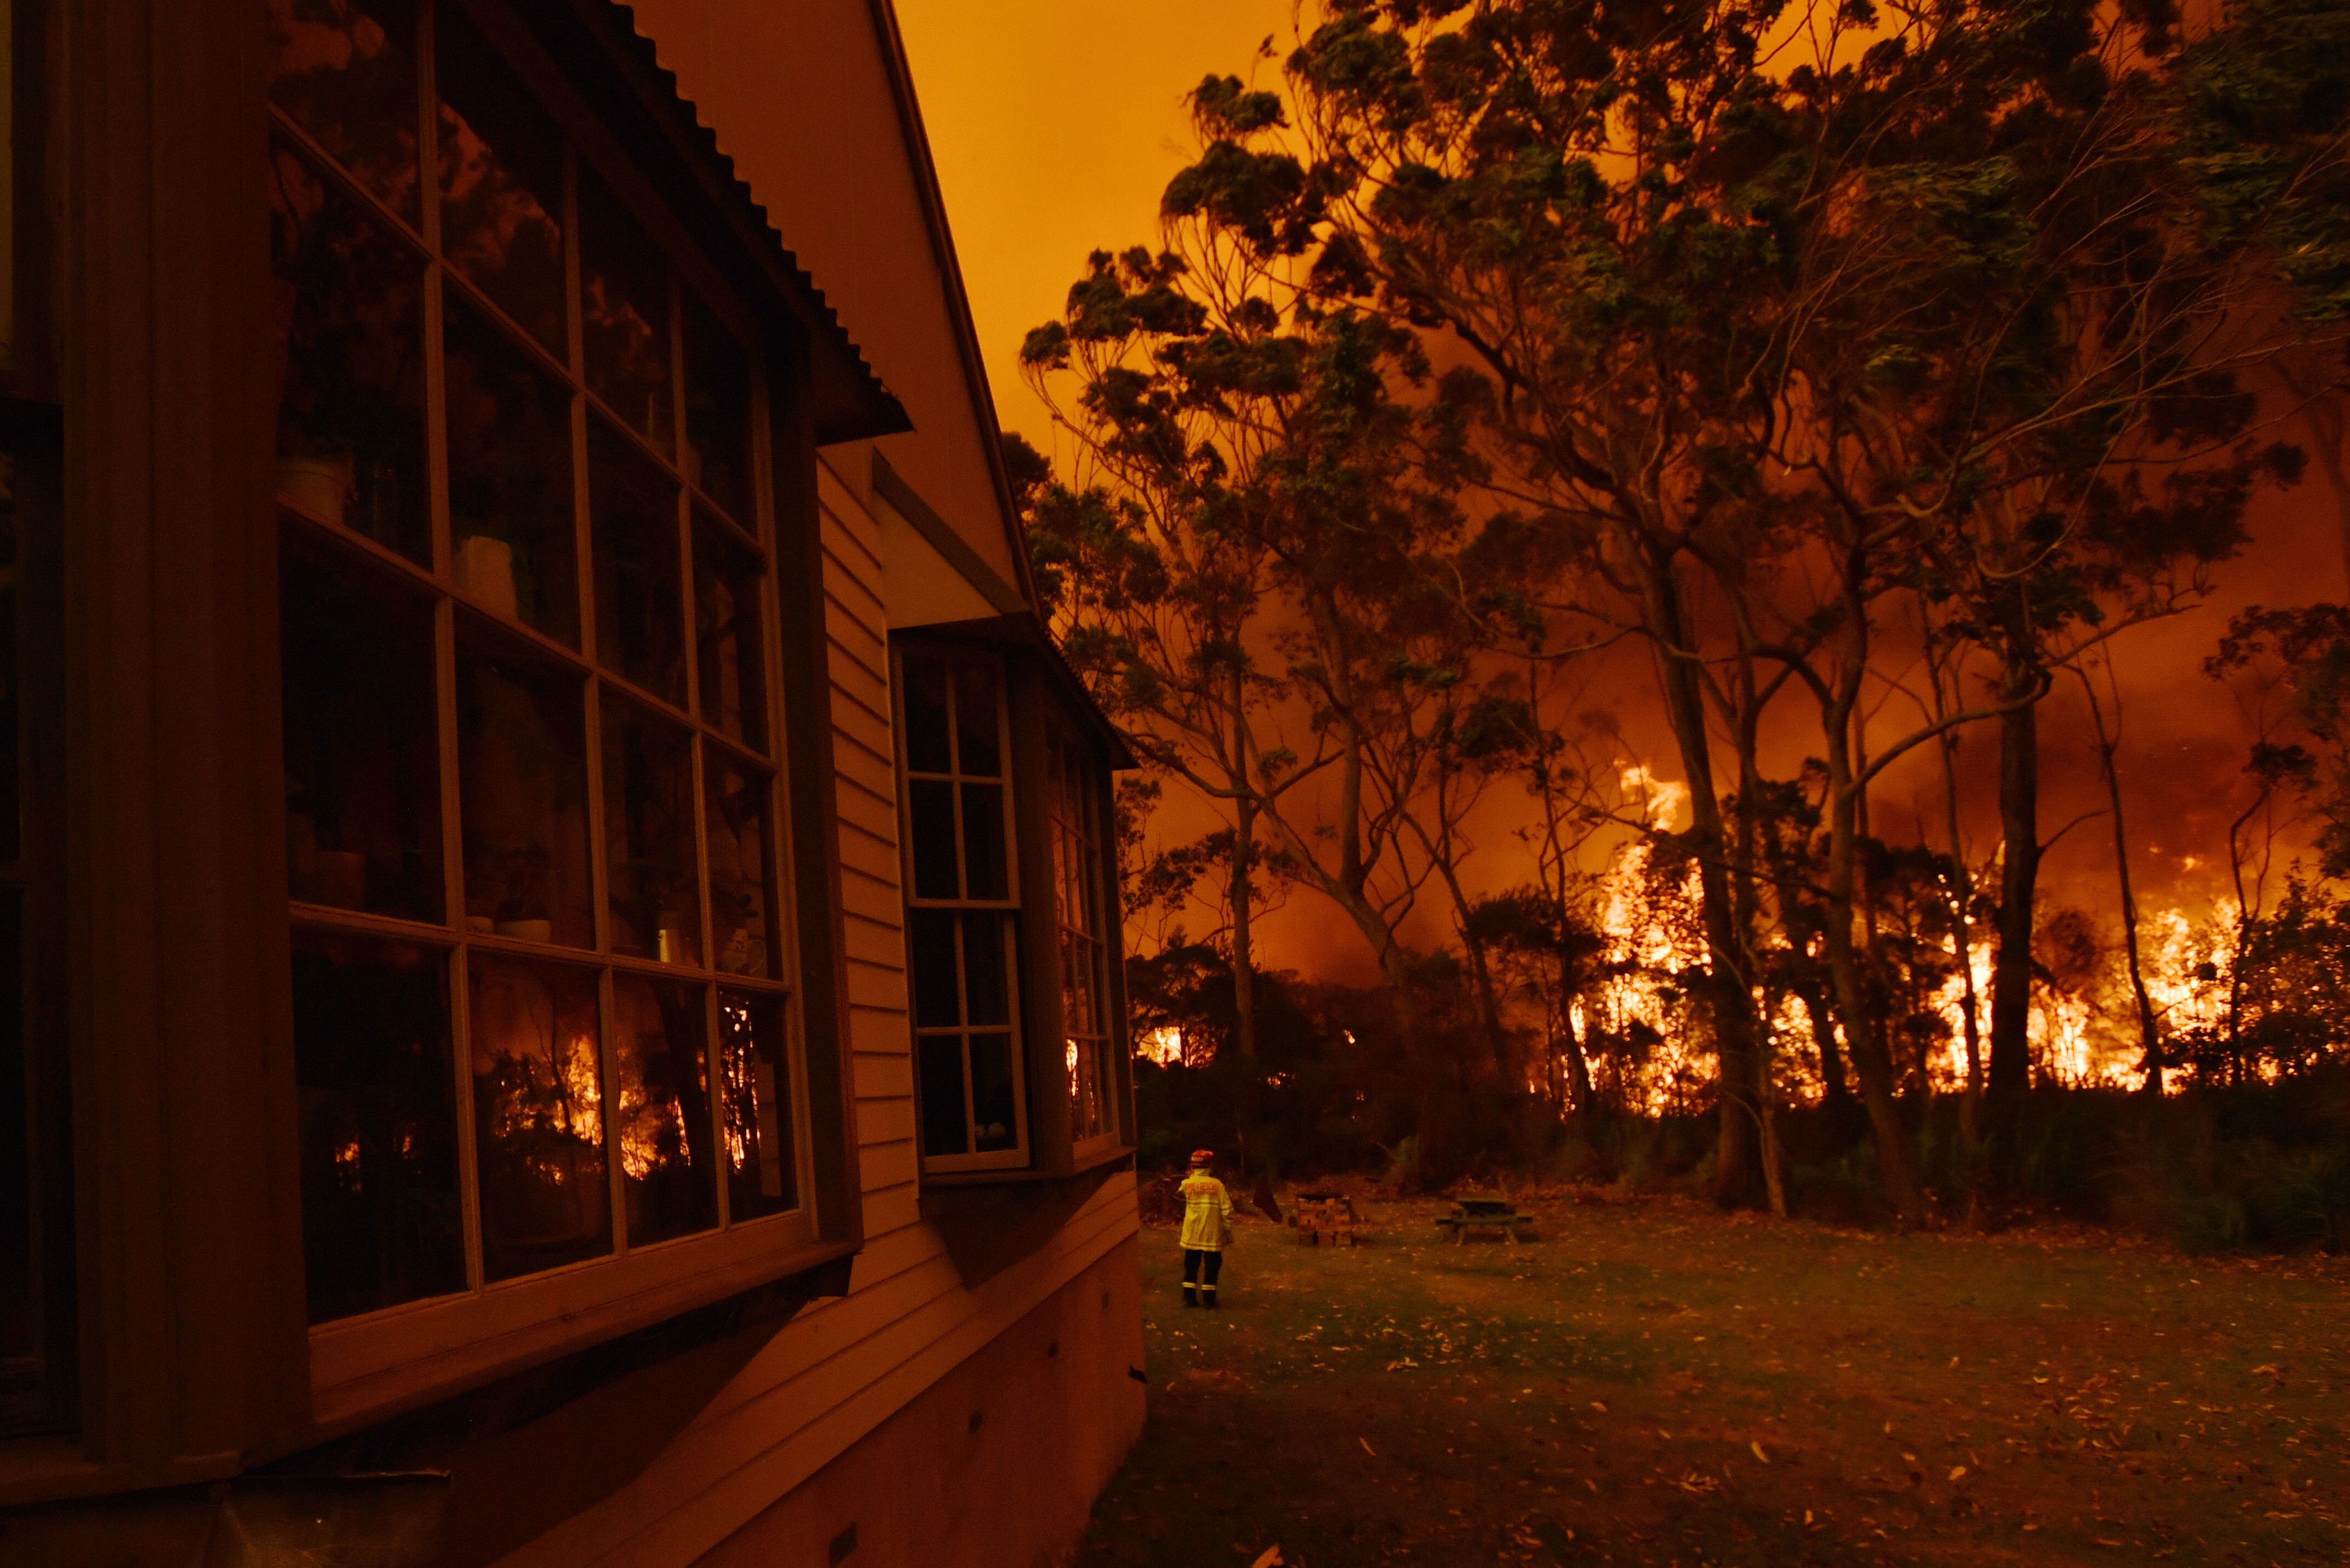 تحارب طواقم مكافحة الحرائق حريق غابات على ممتلكات بالقرب من بحيرة تابوري على الساحل الجنوبي لنيو ساوث ويلز.